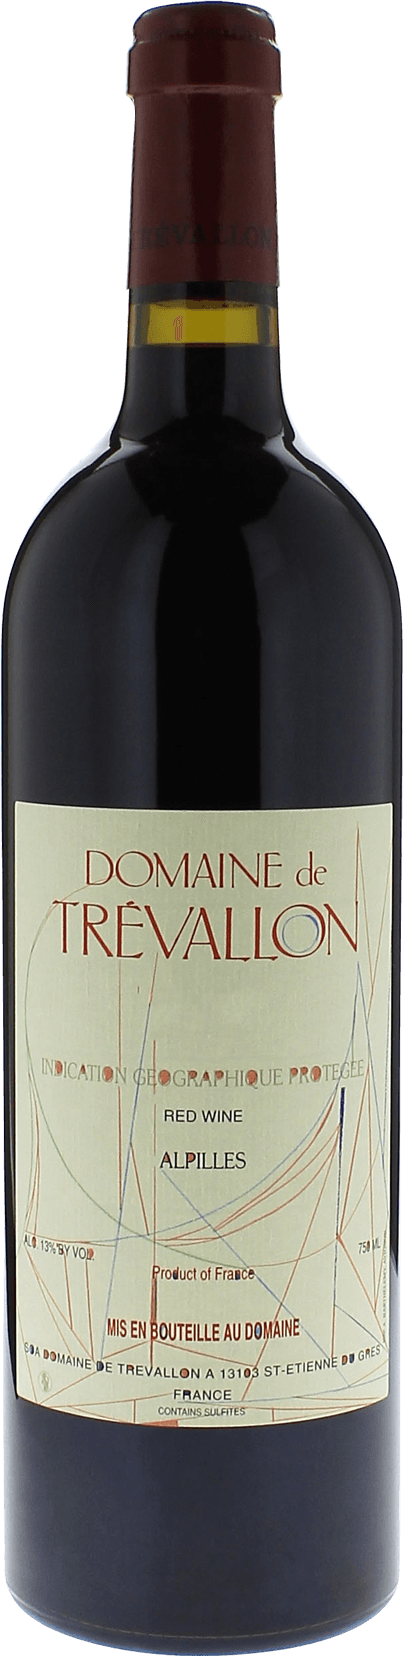 Domaine de trevallon rouge 2004  Vin de Pays, Provence